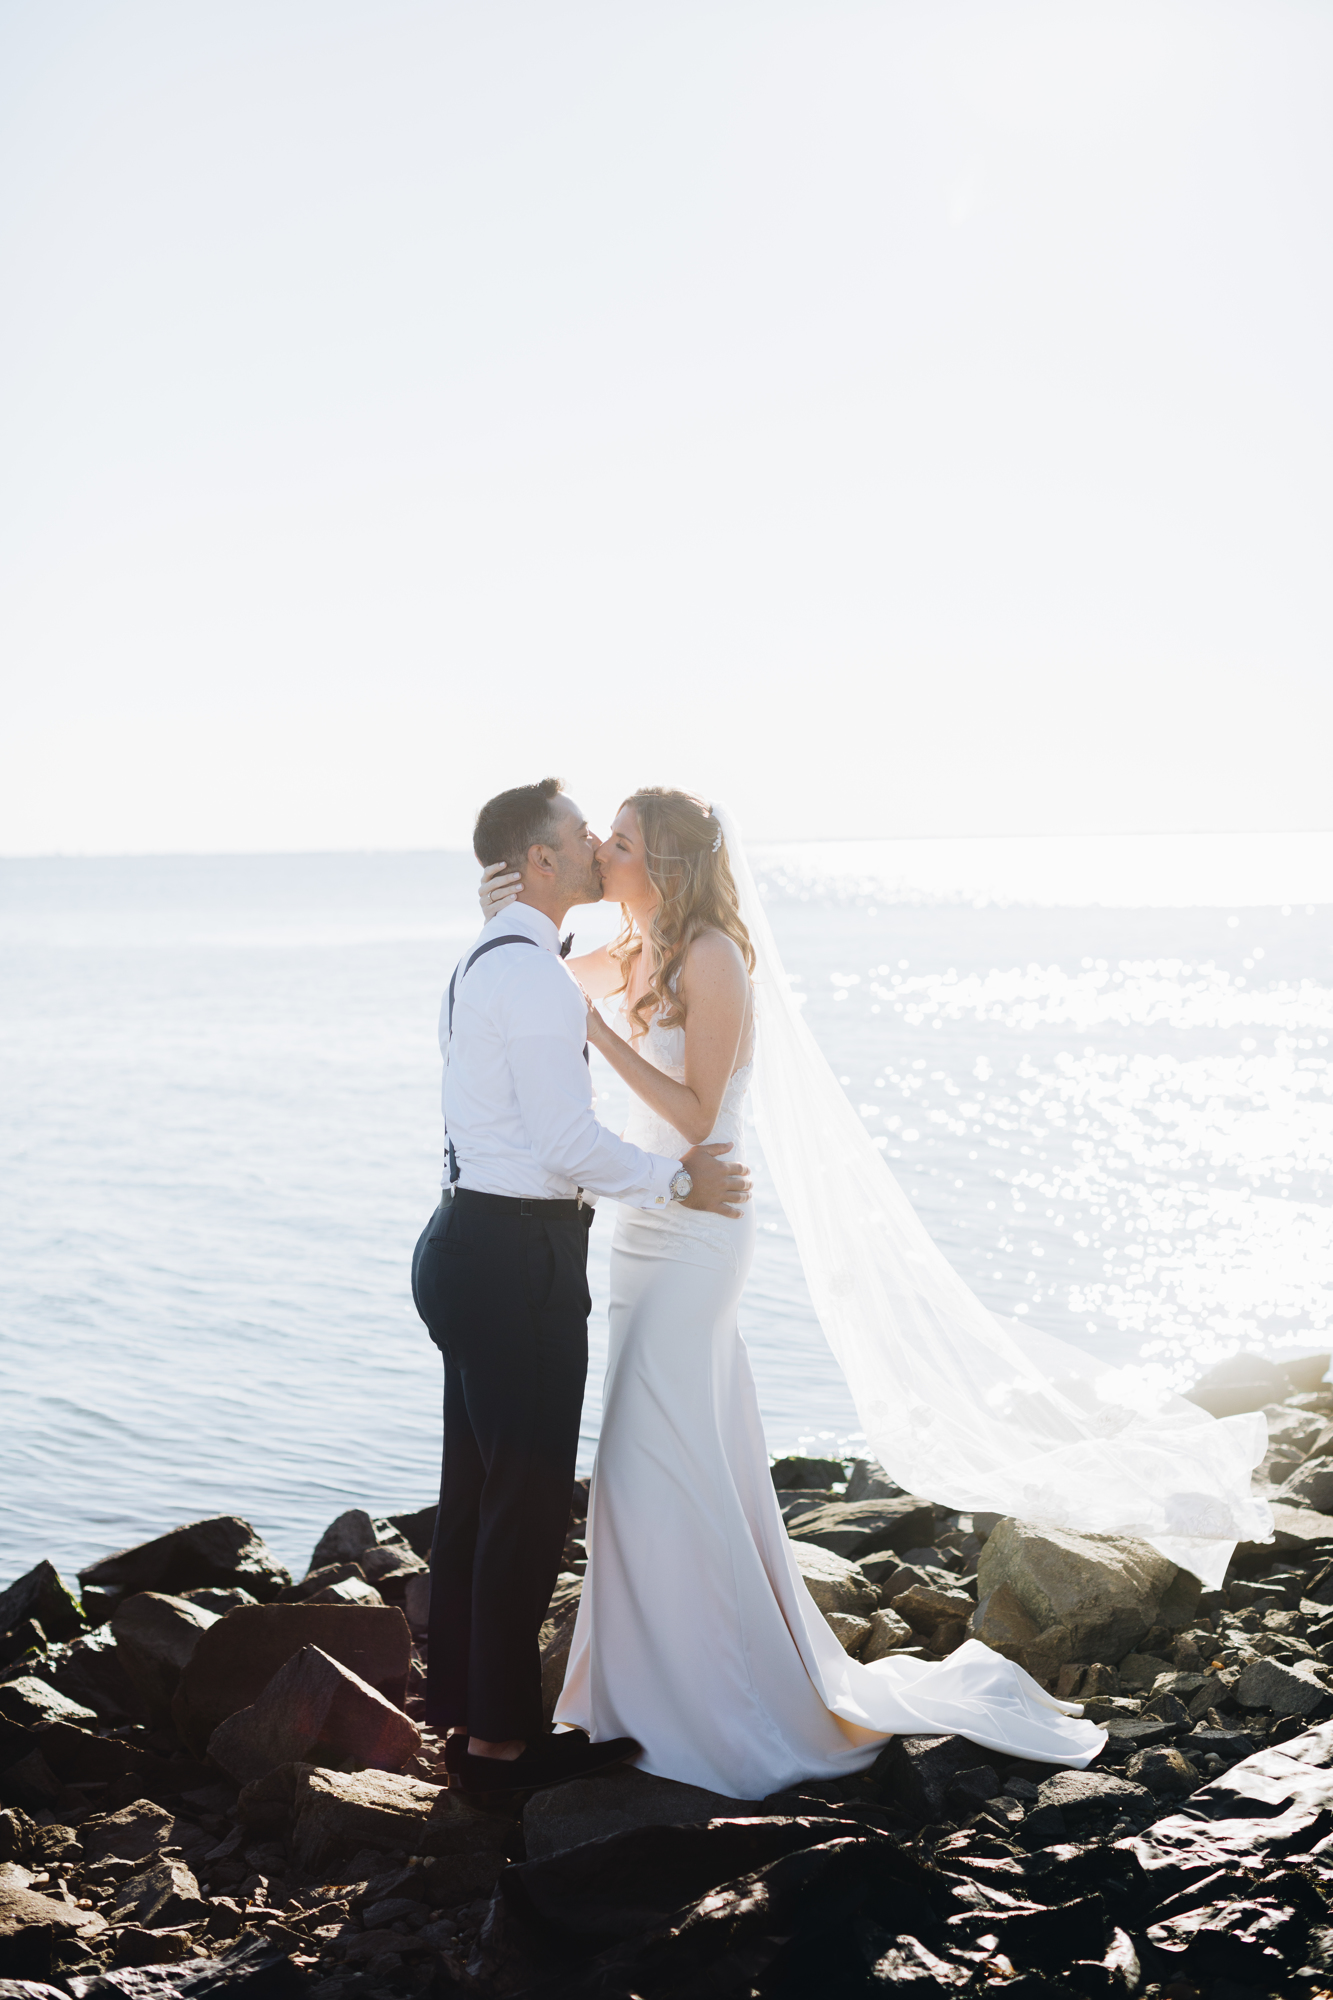 Timeless wedding photos on a rocky beach on Long Island